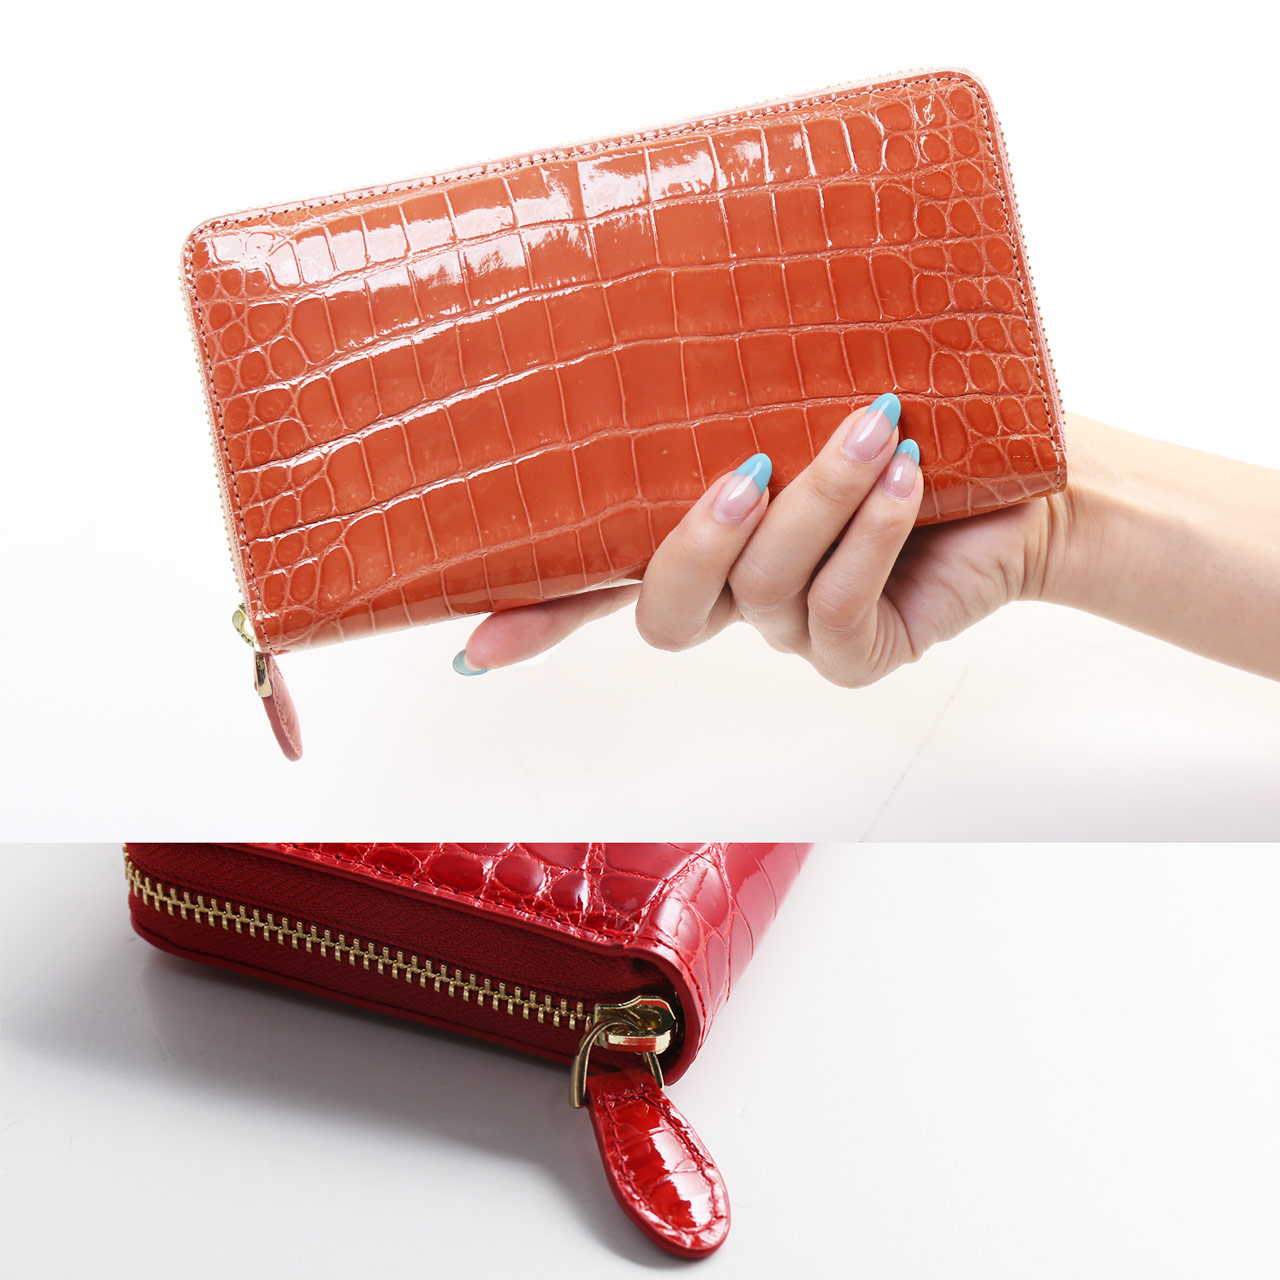 シャイニング クロコダイル 本物 クロコ 財布 レディース 女性 長財布 使いやすい 大容量 一枚取り ピンク 赤 レッド 長サイフ プレゼント  ギフト (06001780r)